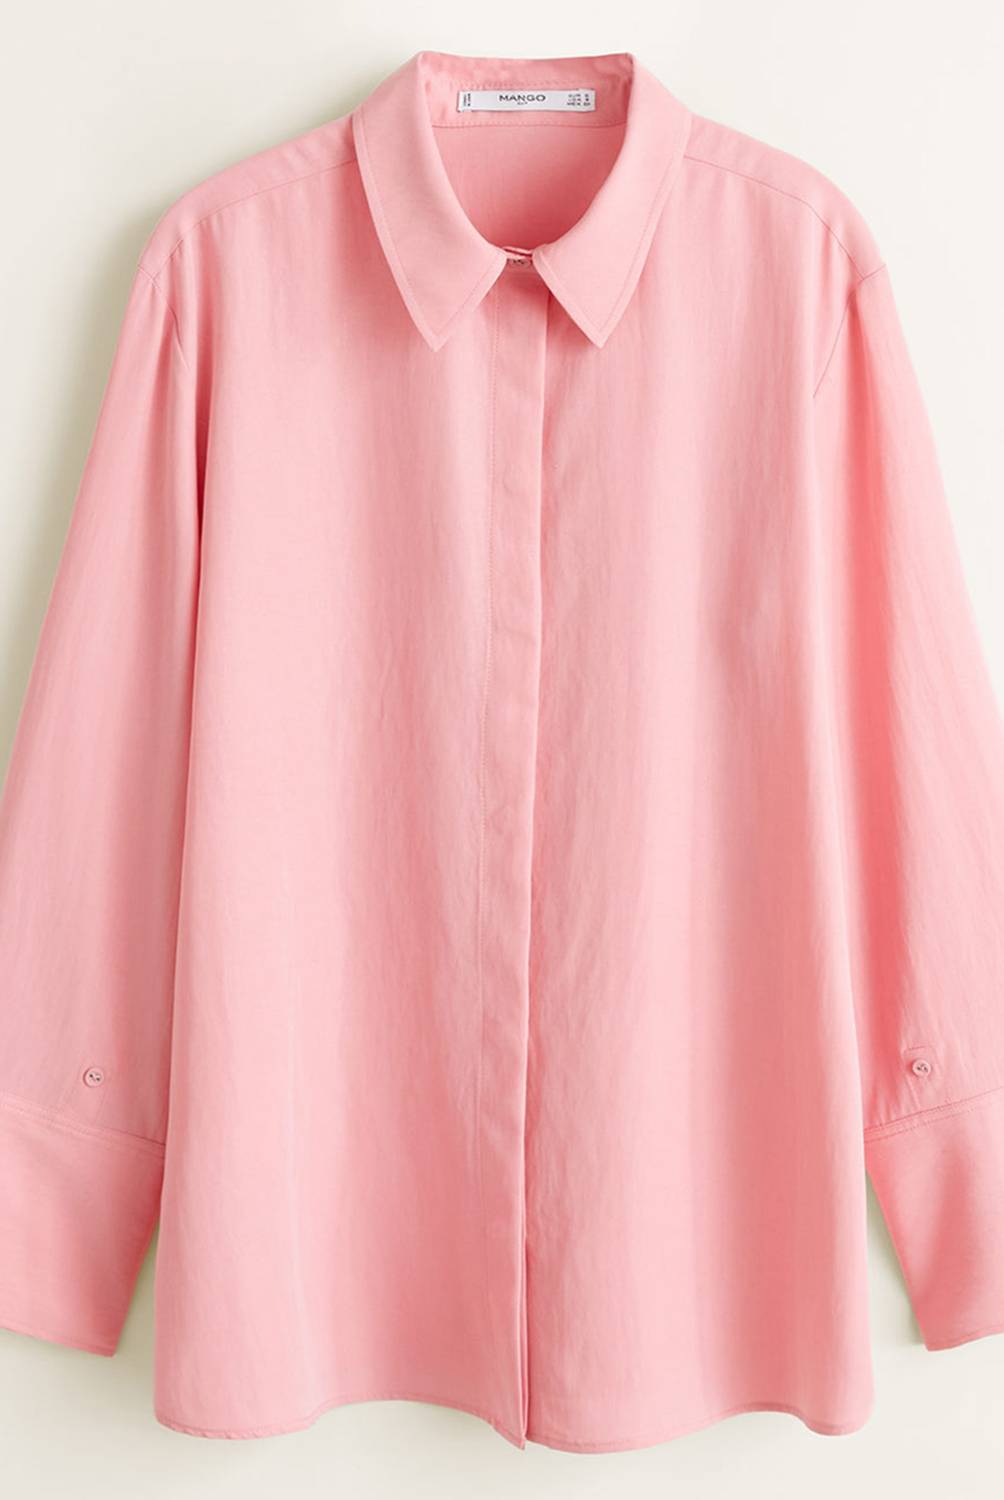 Mango - Camisa Oversize Soft